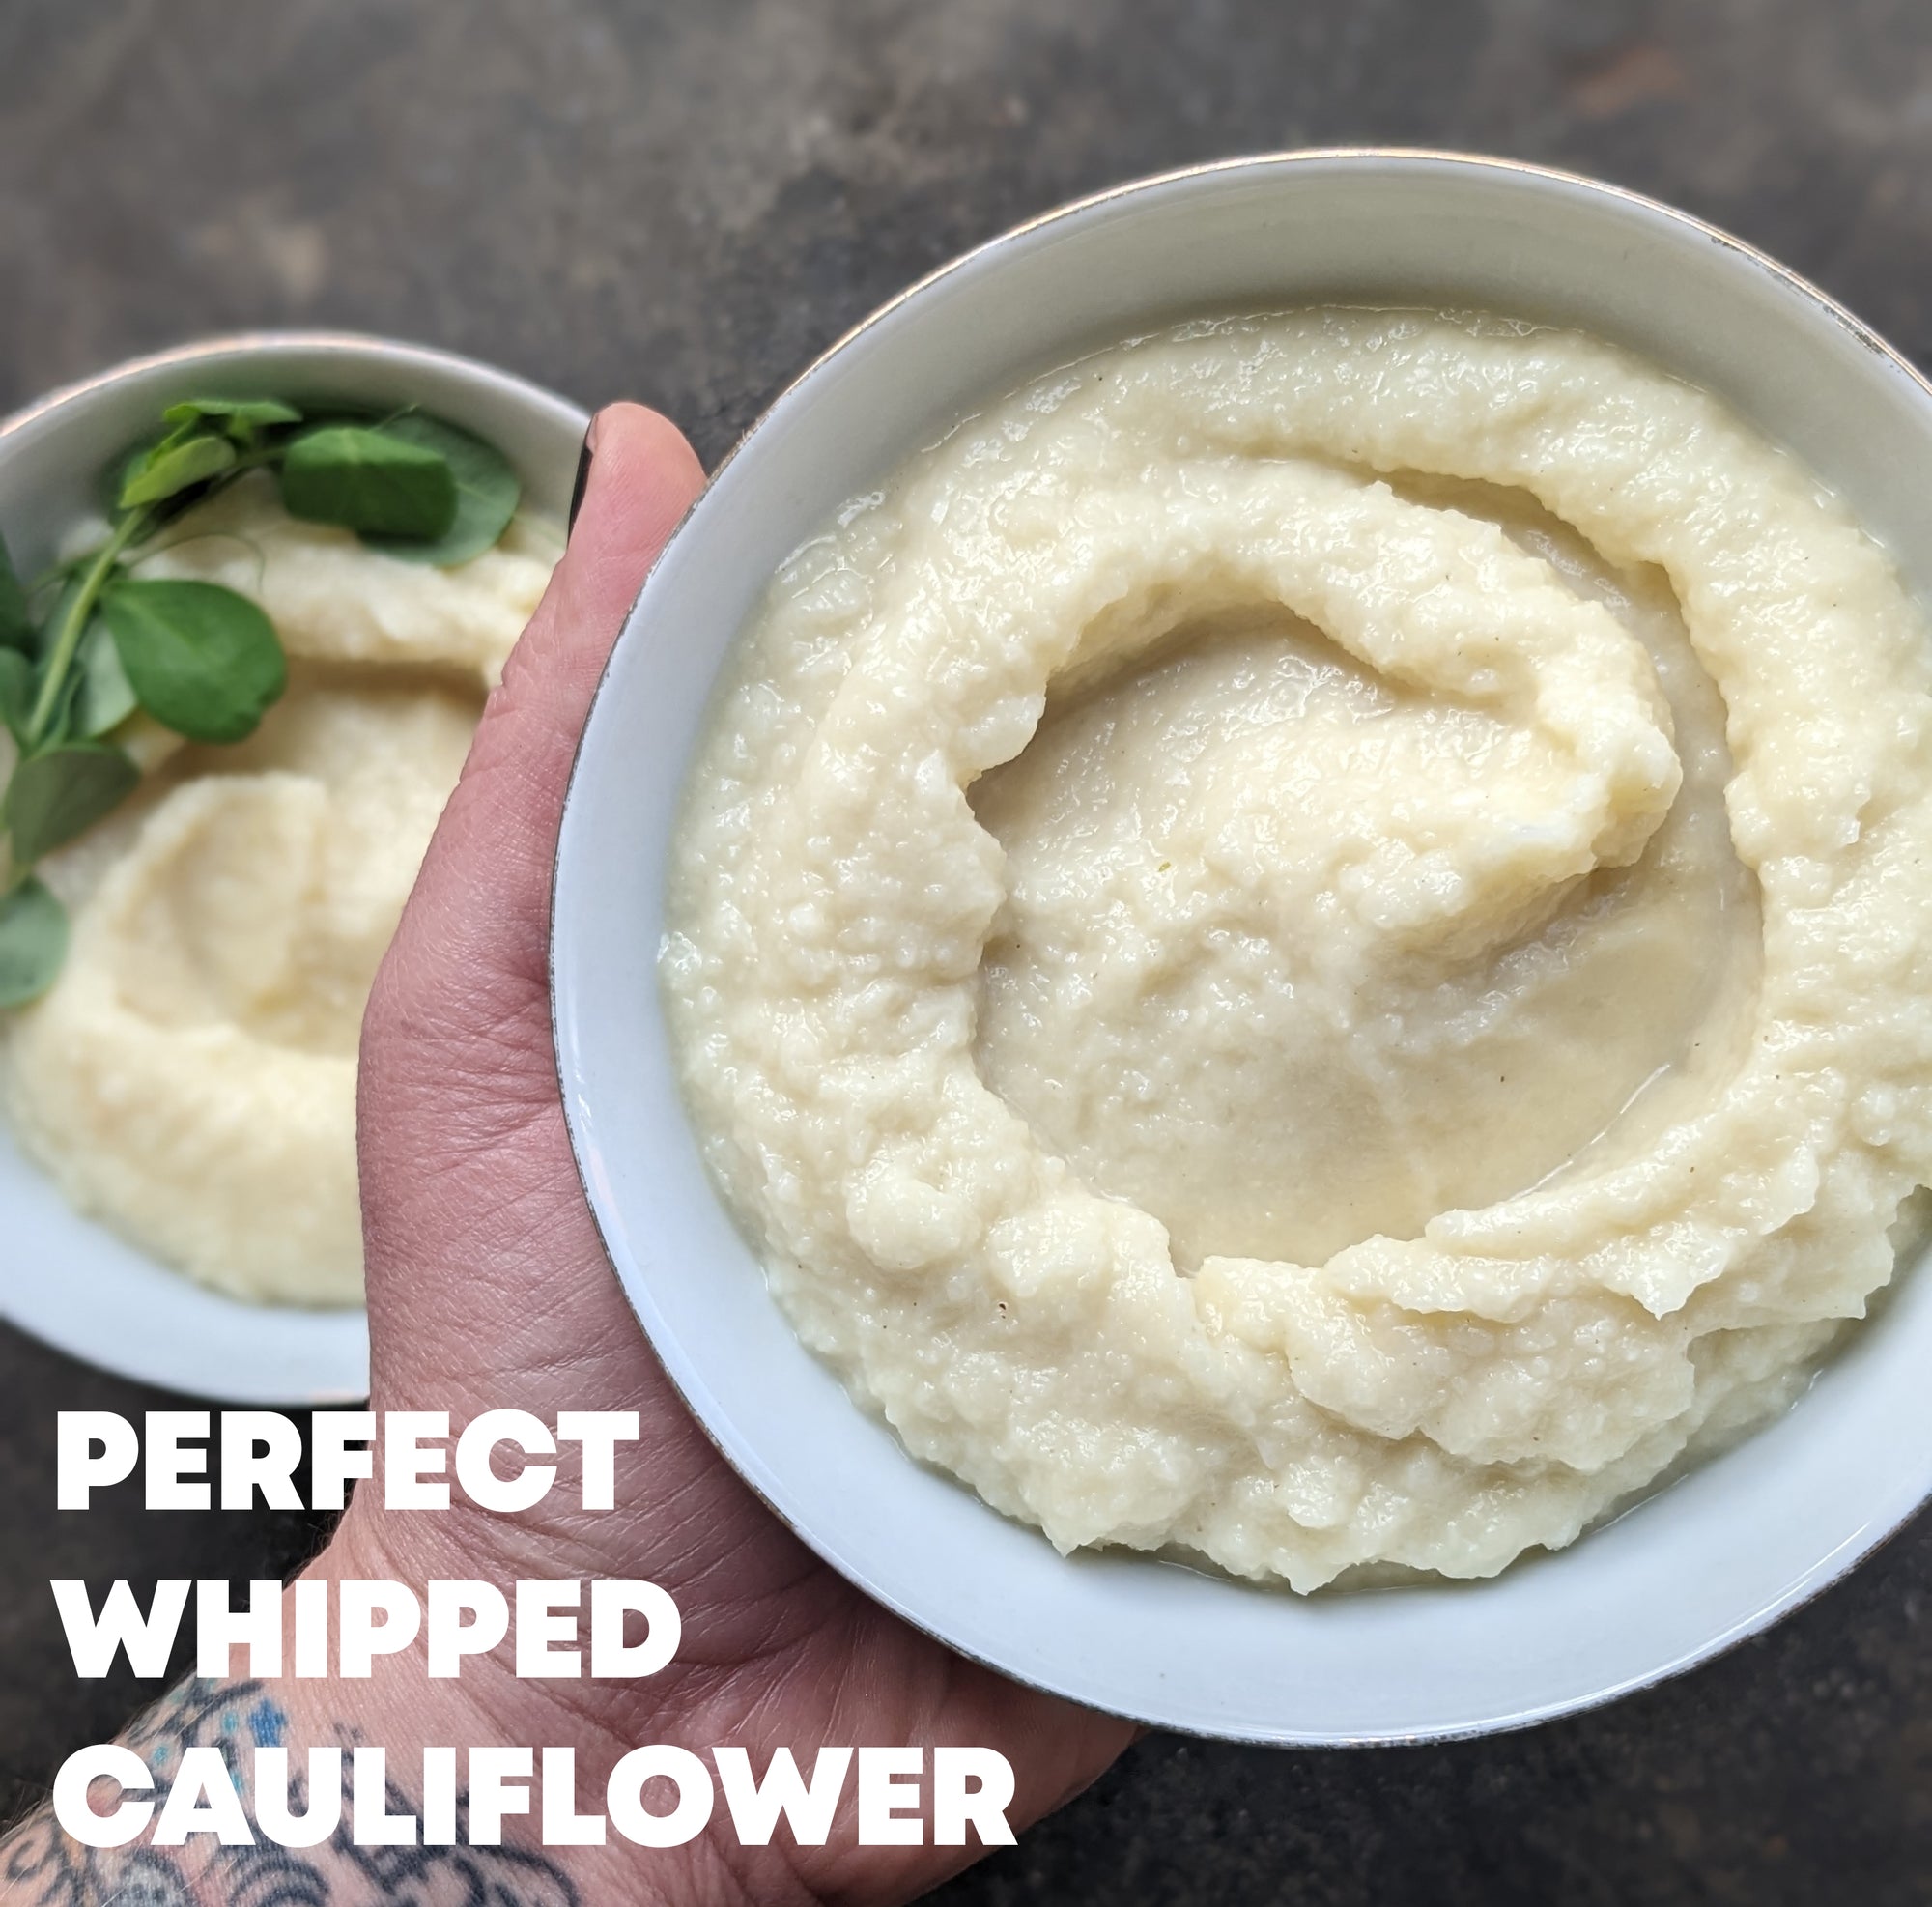 RECIPE - Perfect Whipped Cauliflower